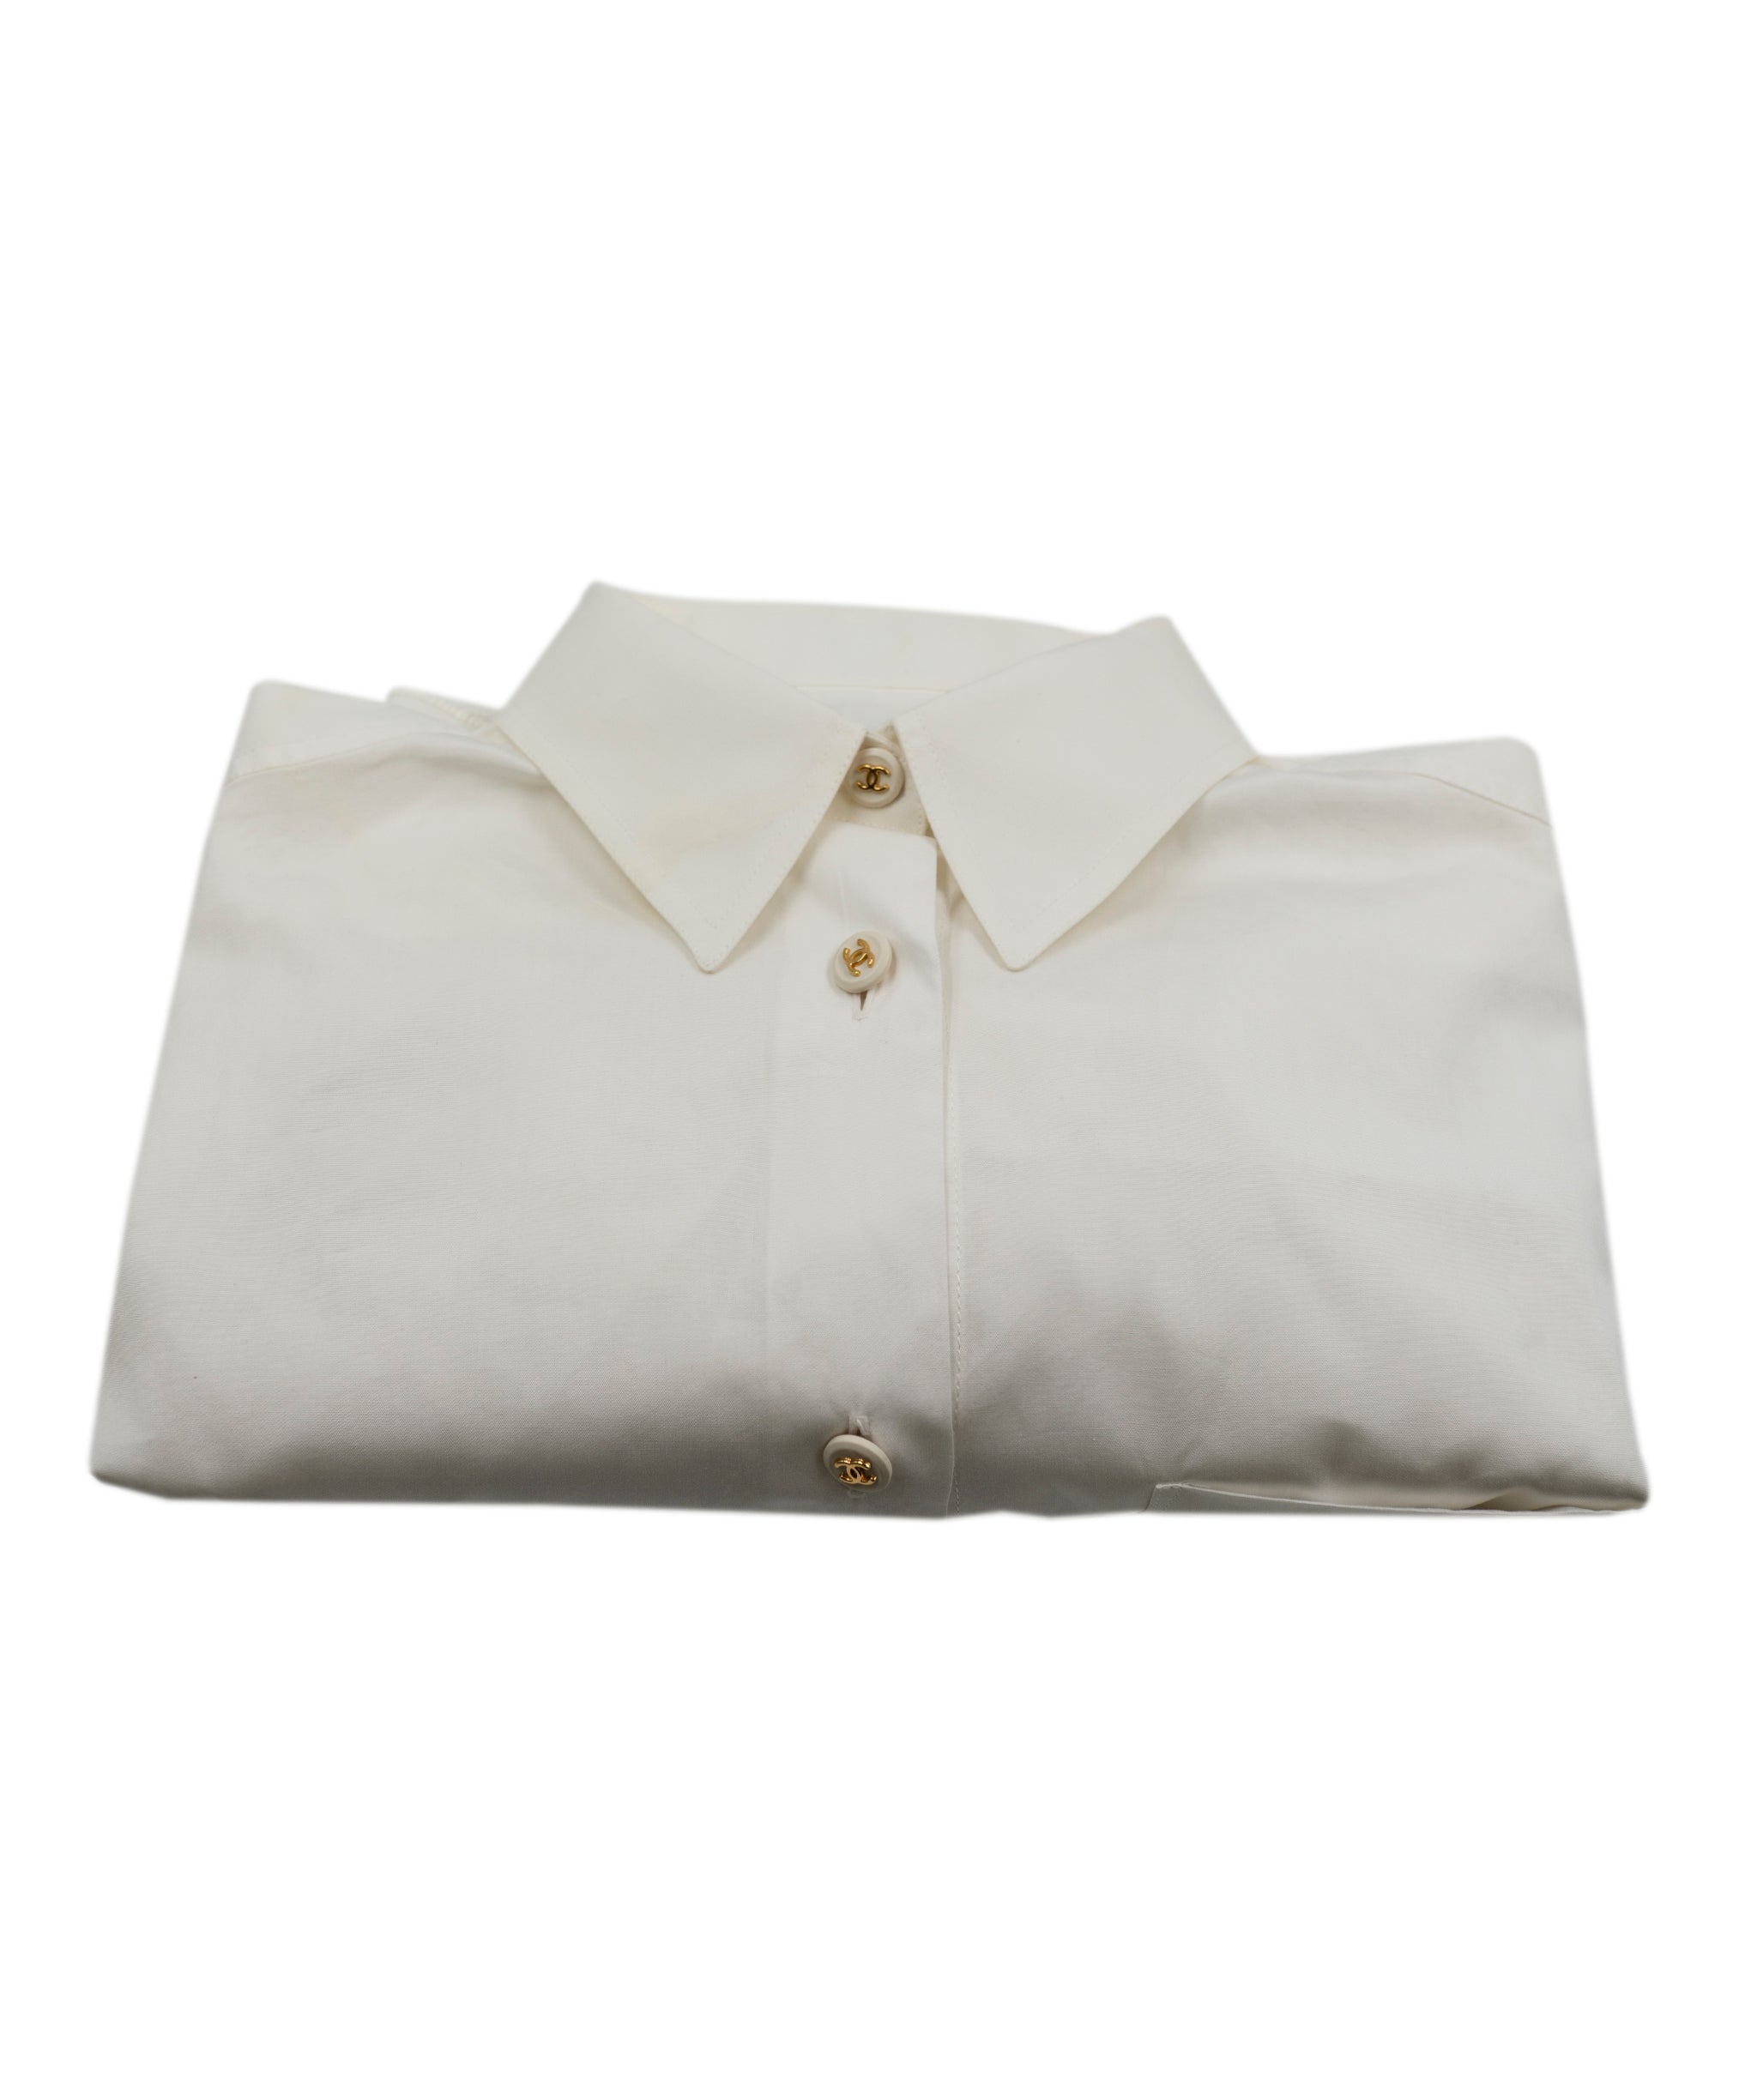 Chanel Vintage Button Down Shirt White ASL4777